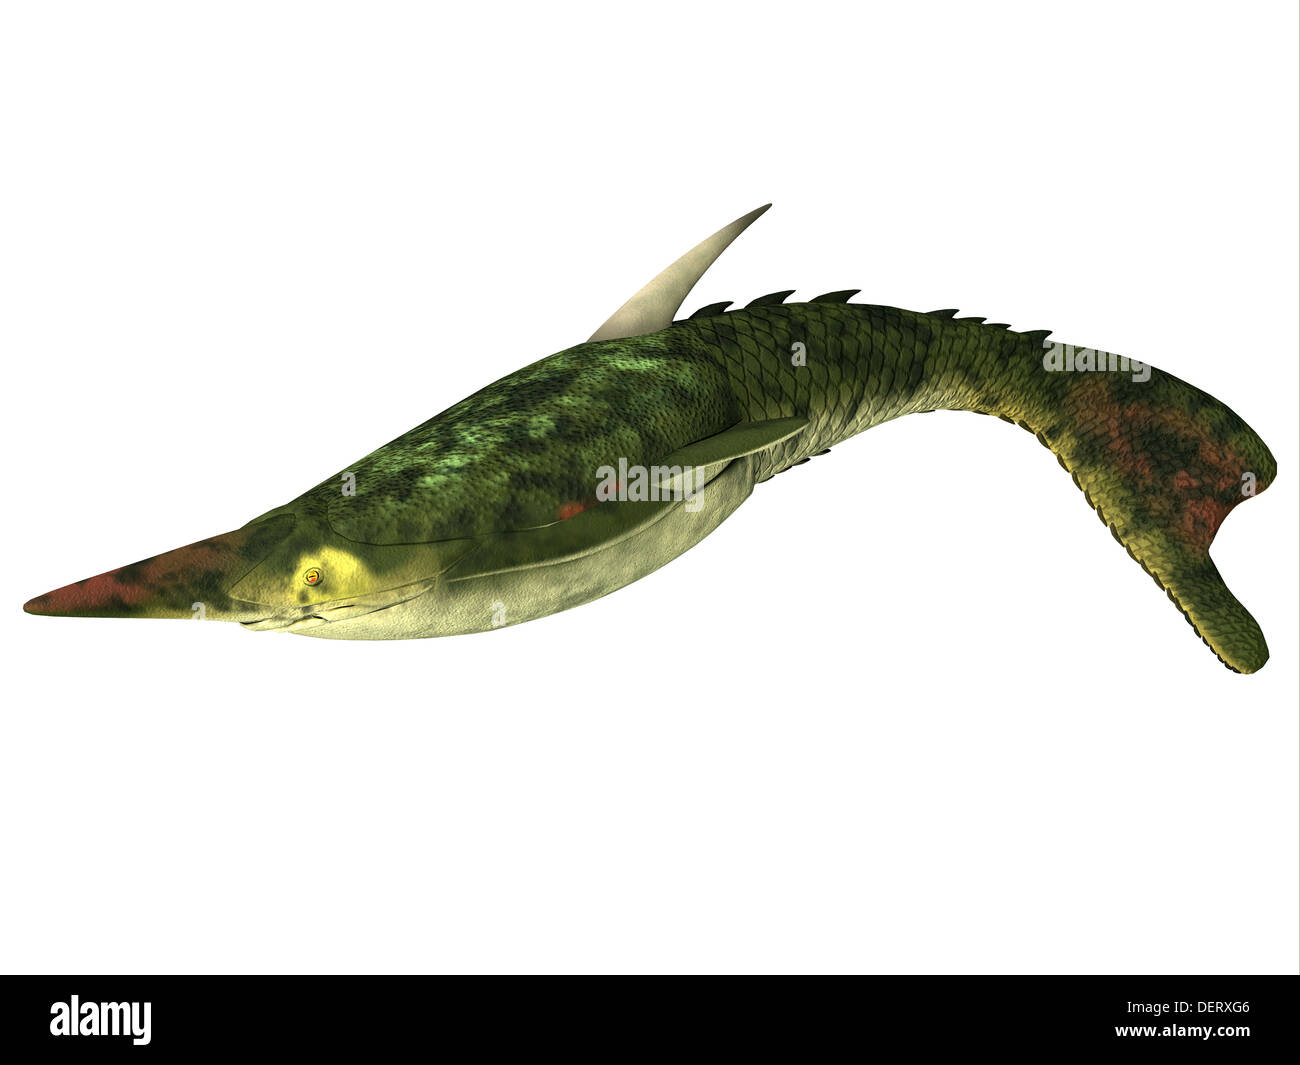 Pteraspis es un género extinto de peces jawless que vivió en el Período Devoniano. Foto de stock